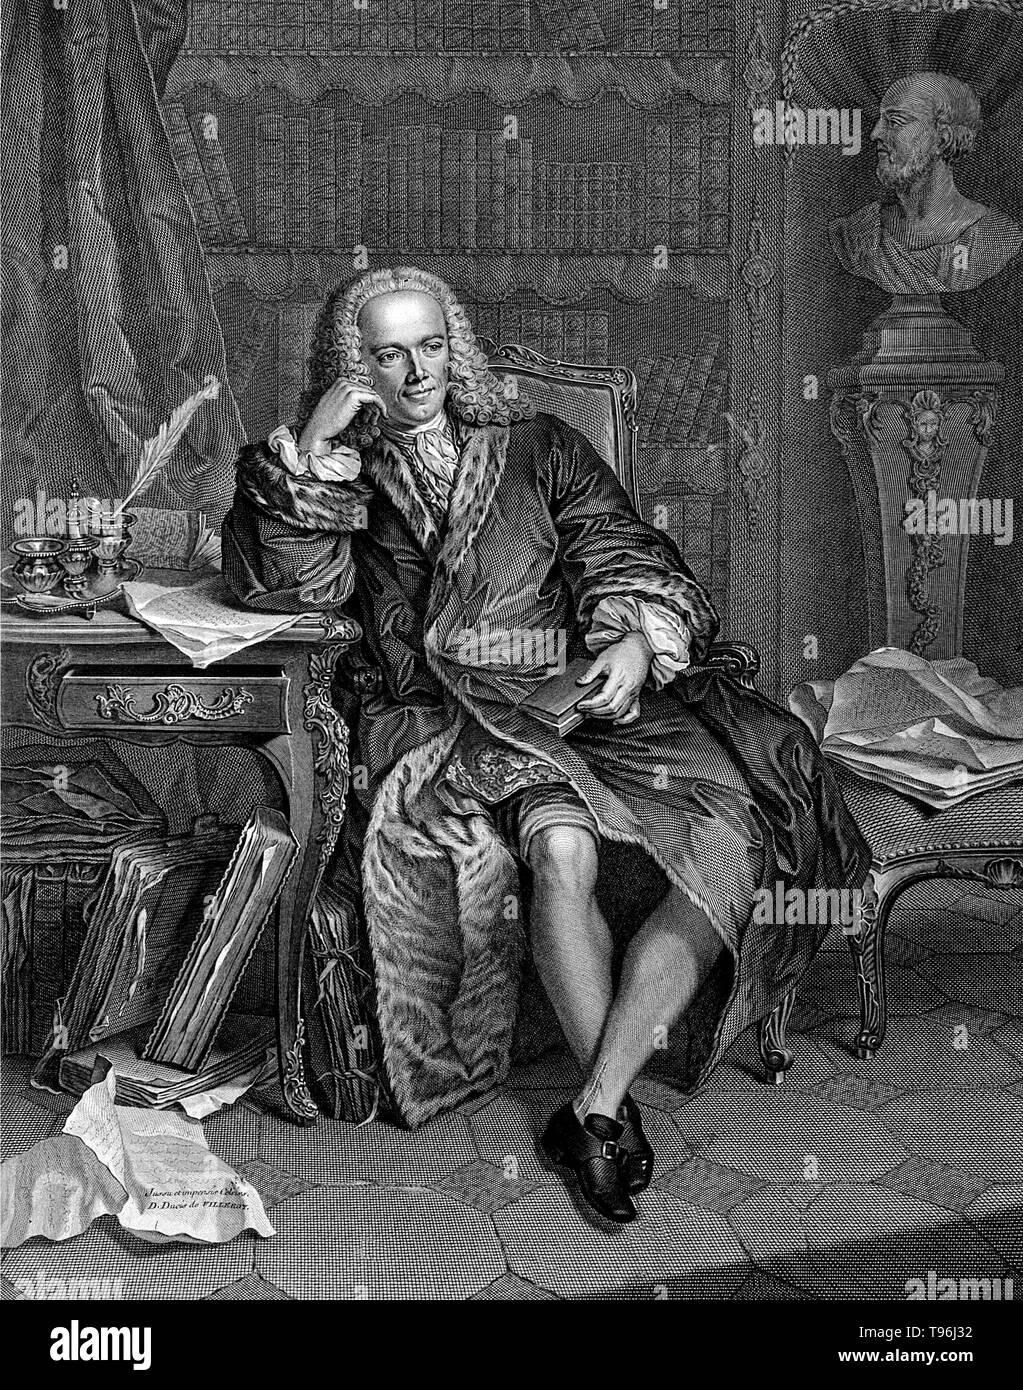 Francois Quesnay (4 giugno 1694 - 16 dicembre 1774) era un economista francese e del medico. Ha studiato medicina a Parigi e divenne medico di Re Luigi XV di Francia. Dalla fine del 1740s iniziò a dedicare più tempo allo studio di economia, raccogliendo intorno a sé un gruppo di eminenti pensatori economica (l'Physiocrates). Egli ha pubblicato le "Tableau économique" (economico tabella) nel 1758, che ha fornito le basi delle idee del Physiocrats. Foto Stock